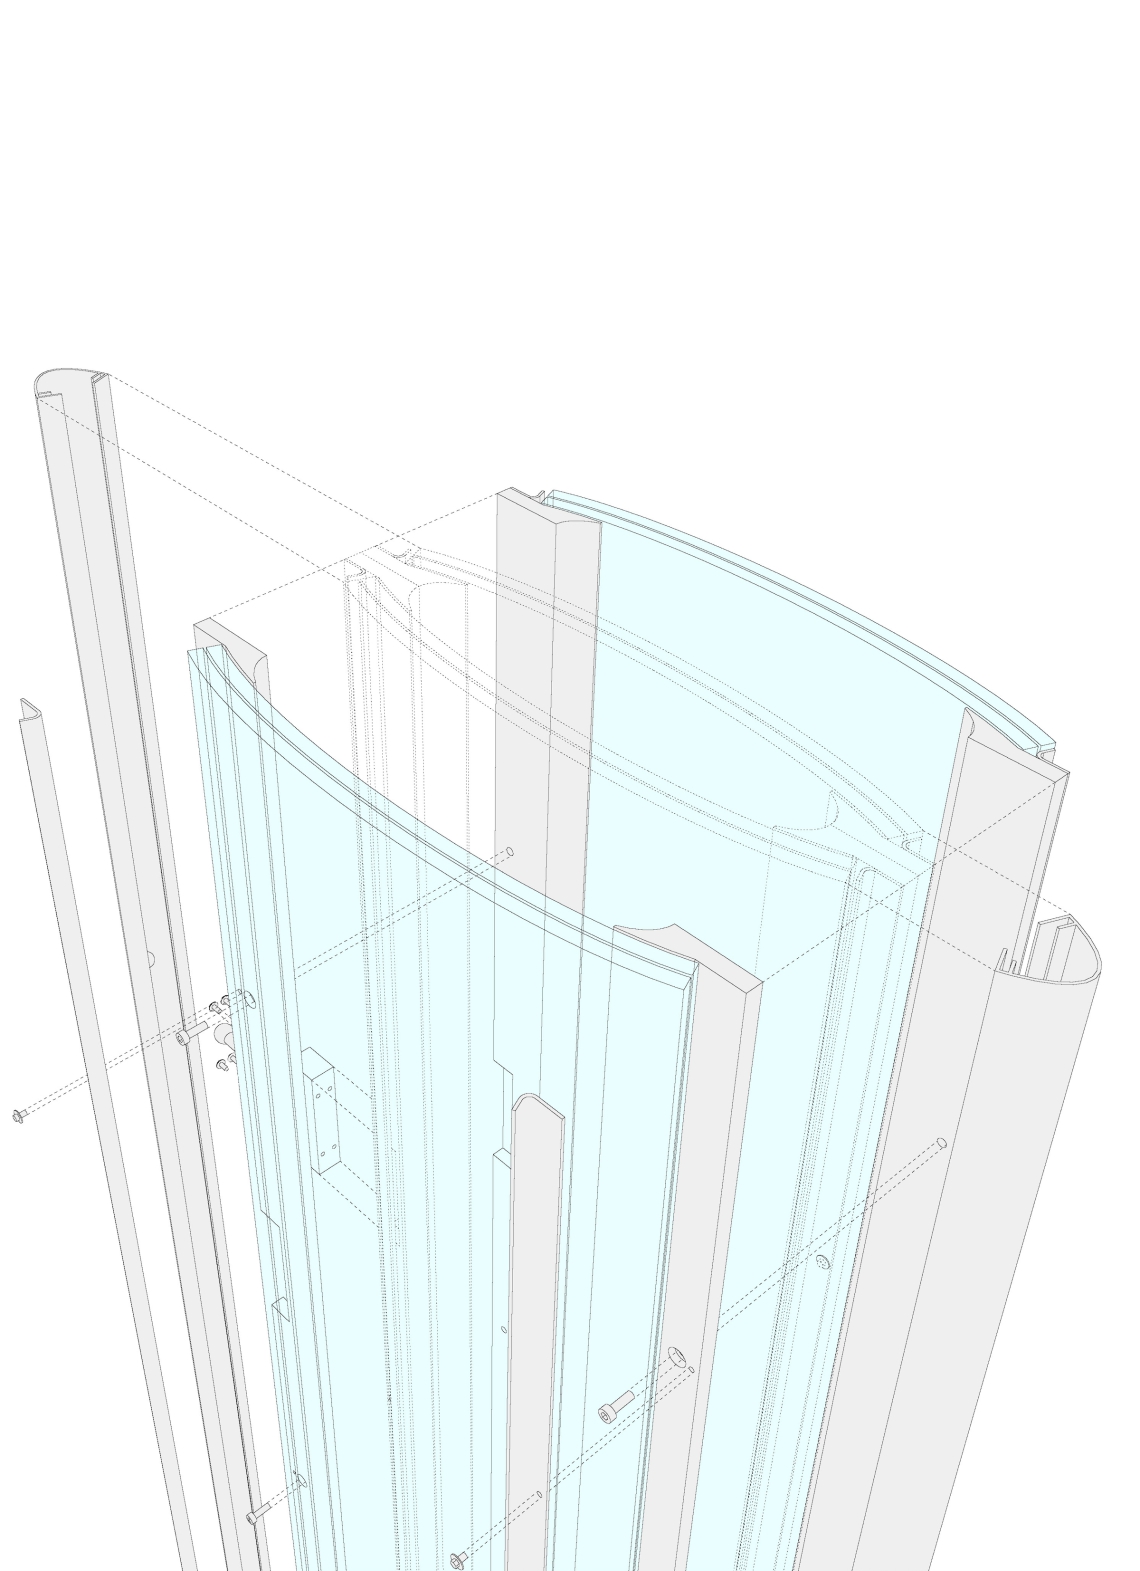 FAT-LAB-Glasfassade-seele-zeichnungen - 3 - FAT LAB | Forschung Architektur Technik